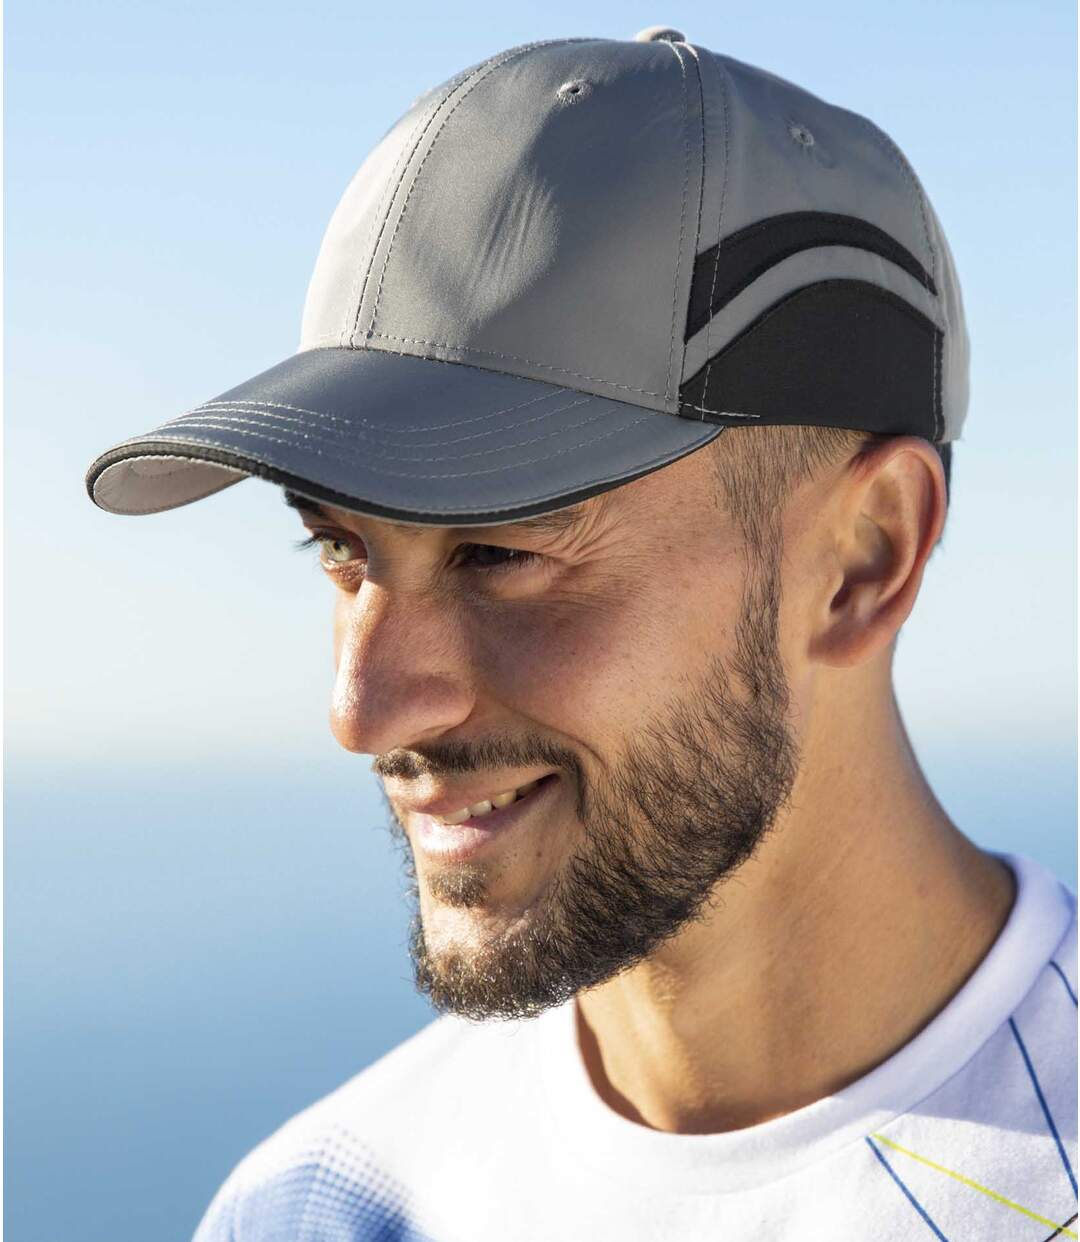 Pack of 2 Men's Microfiber Baseball Caps - Black Gray Atlas For Men